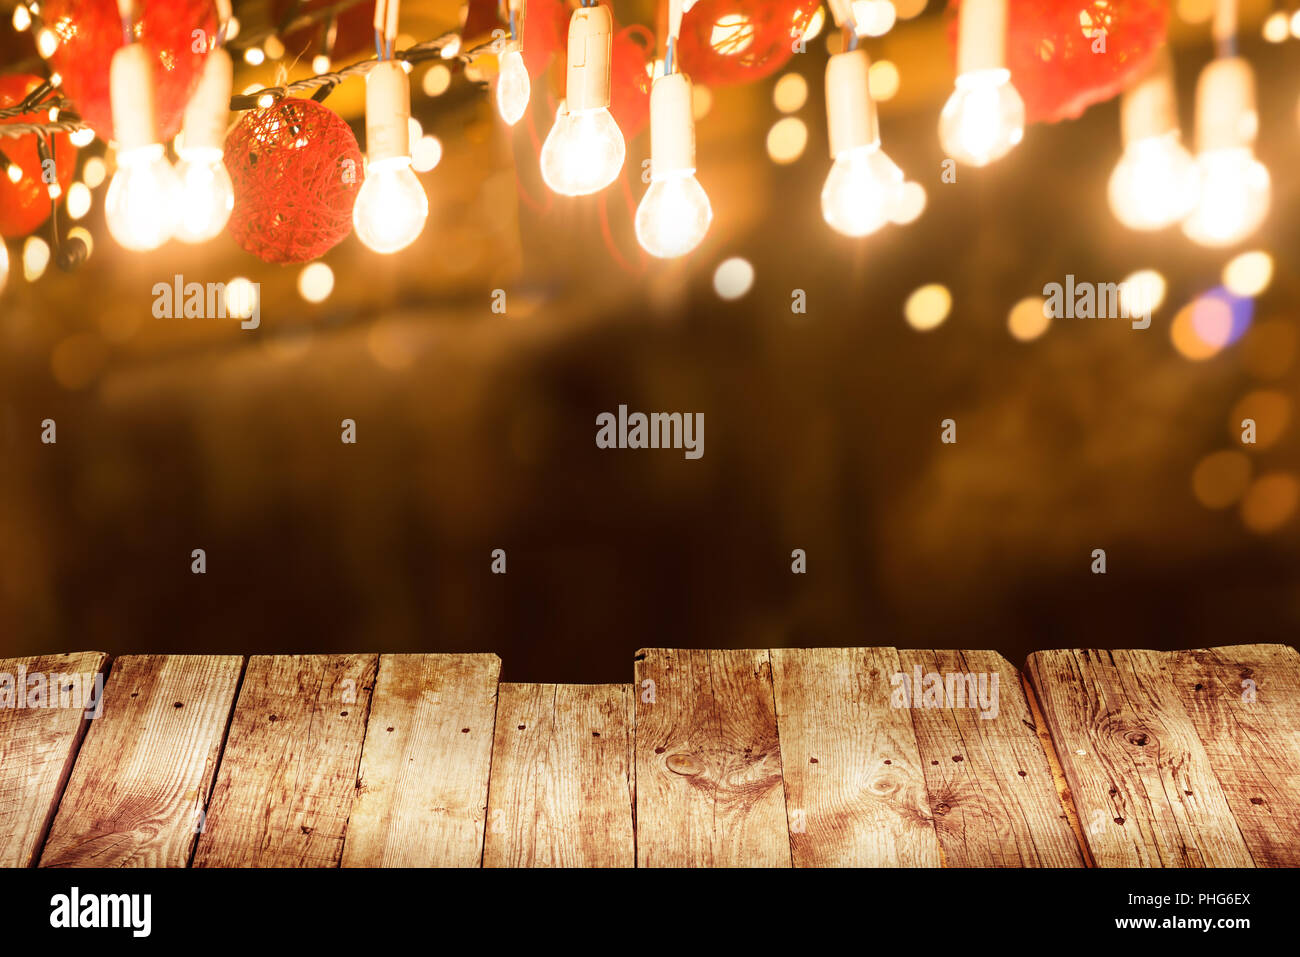 Holztisch mit Licht illuminaion Stockfoto